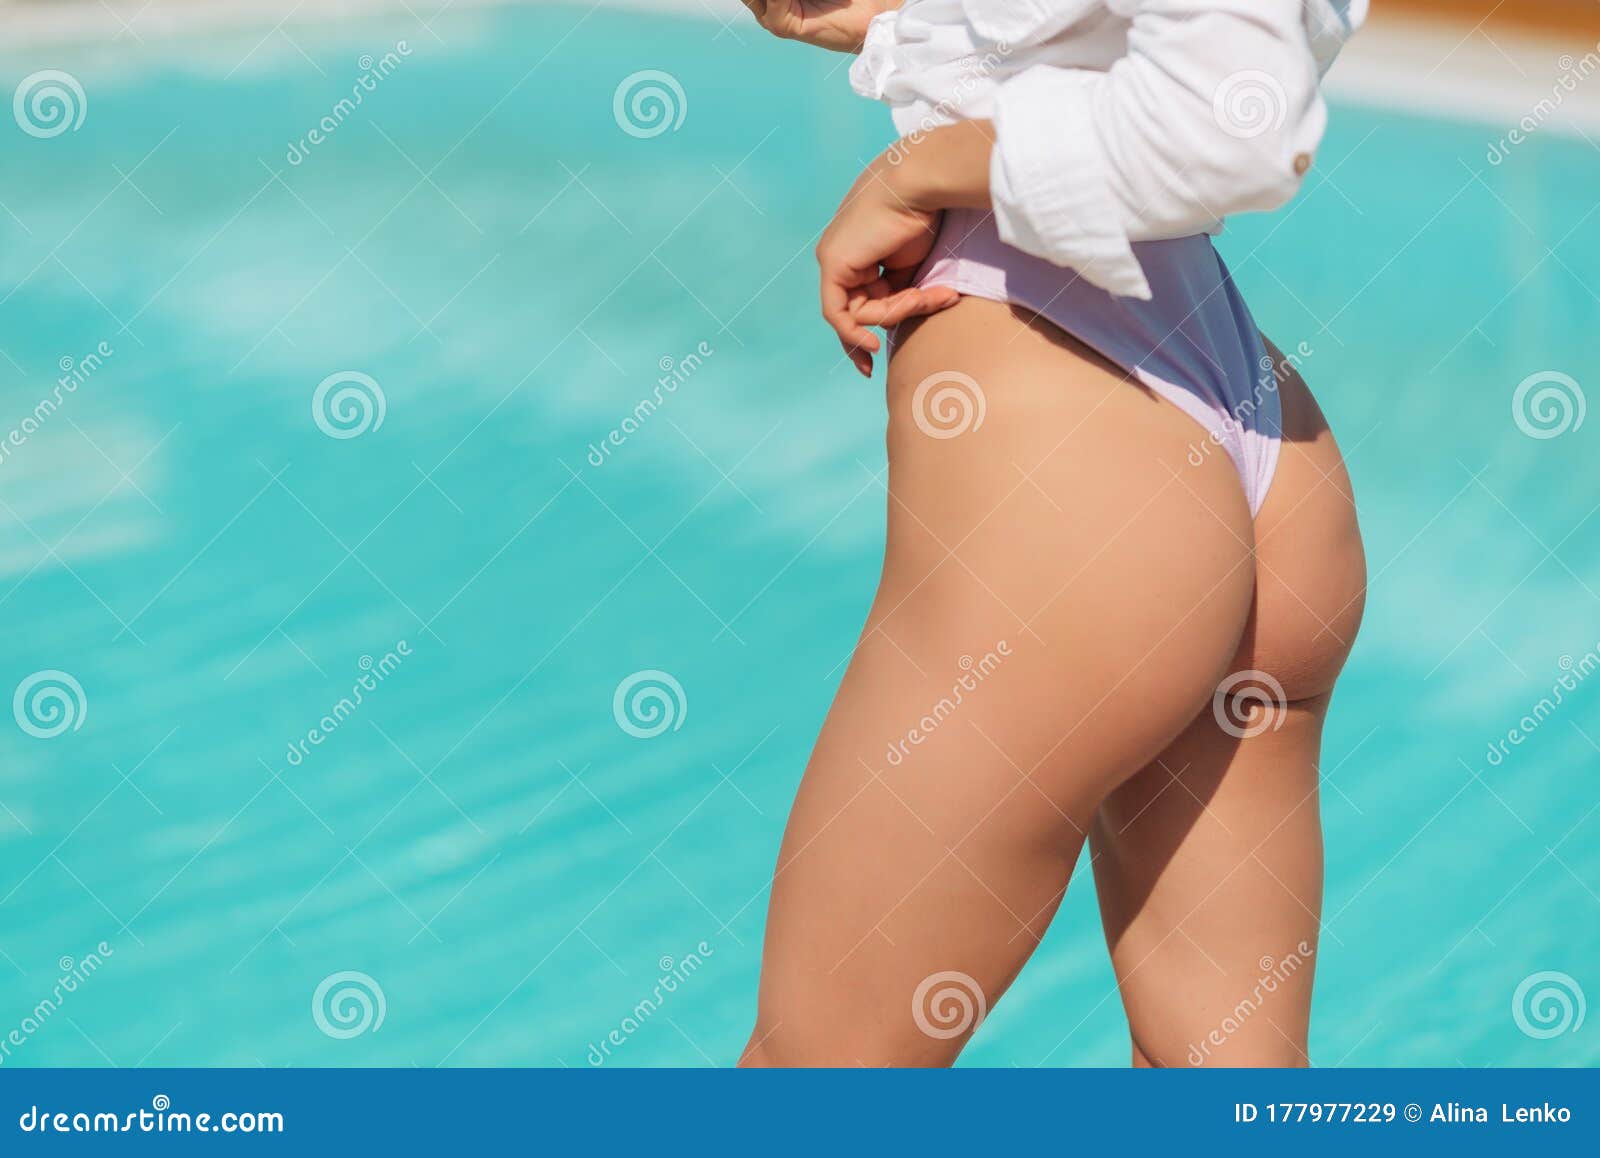 Beach Ass